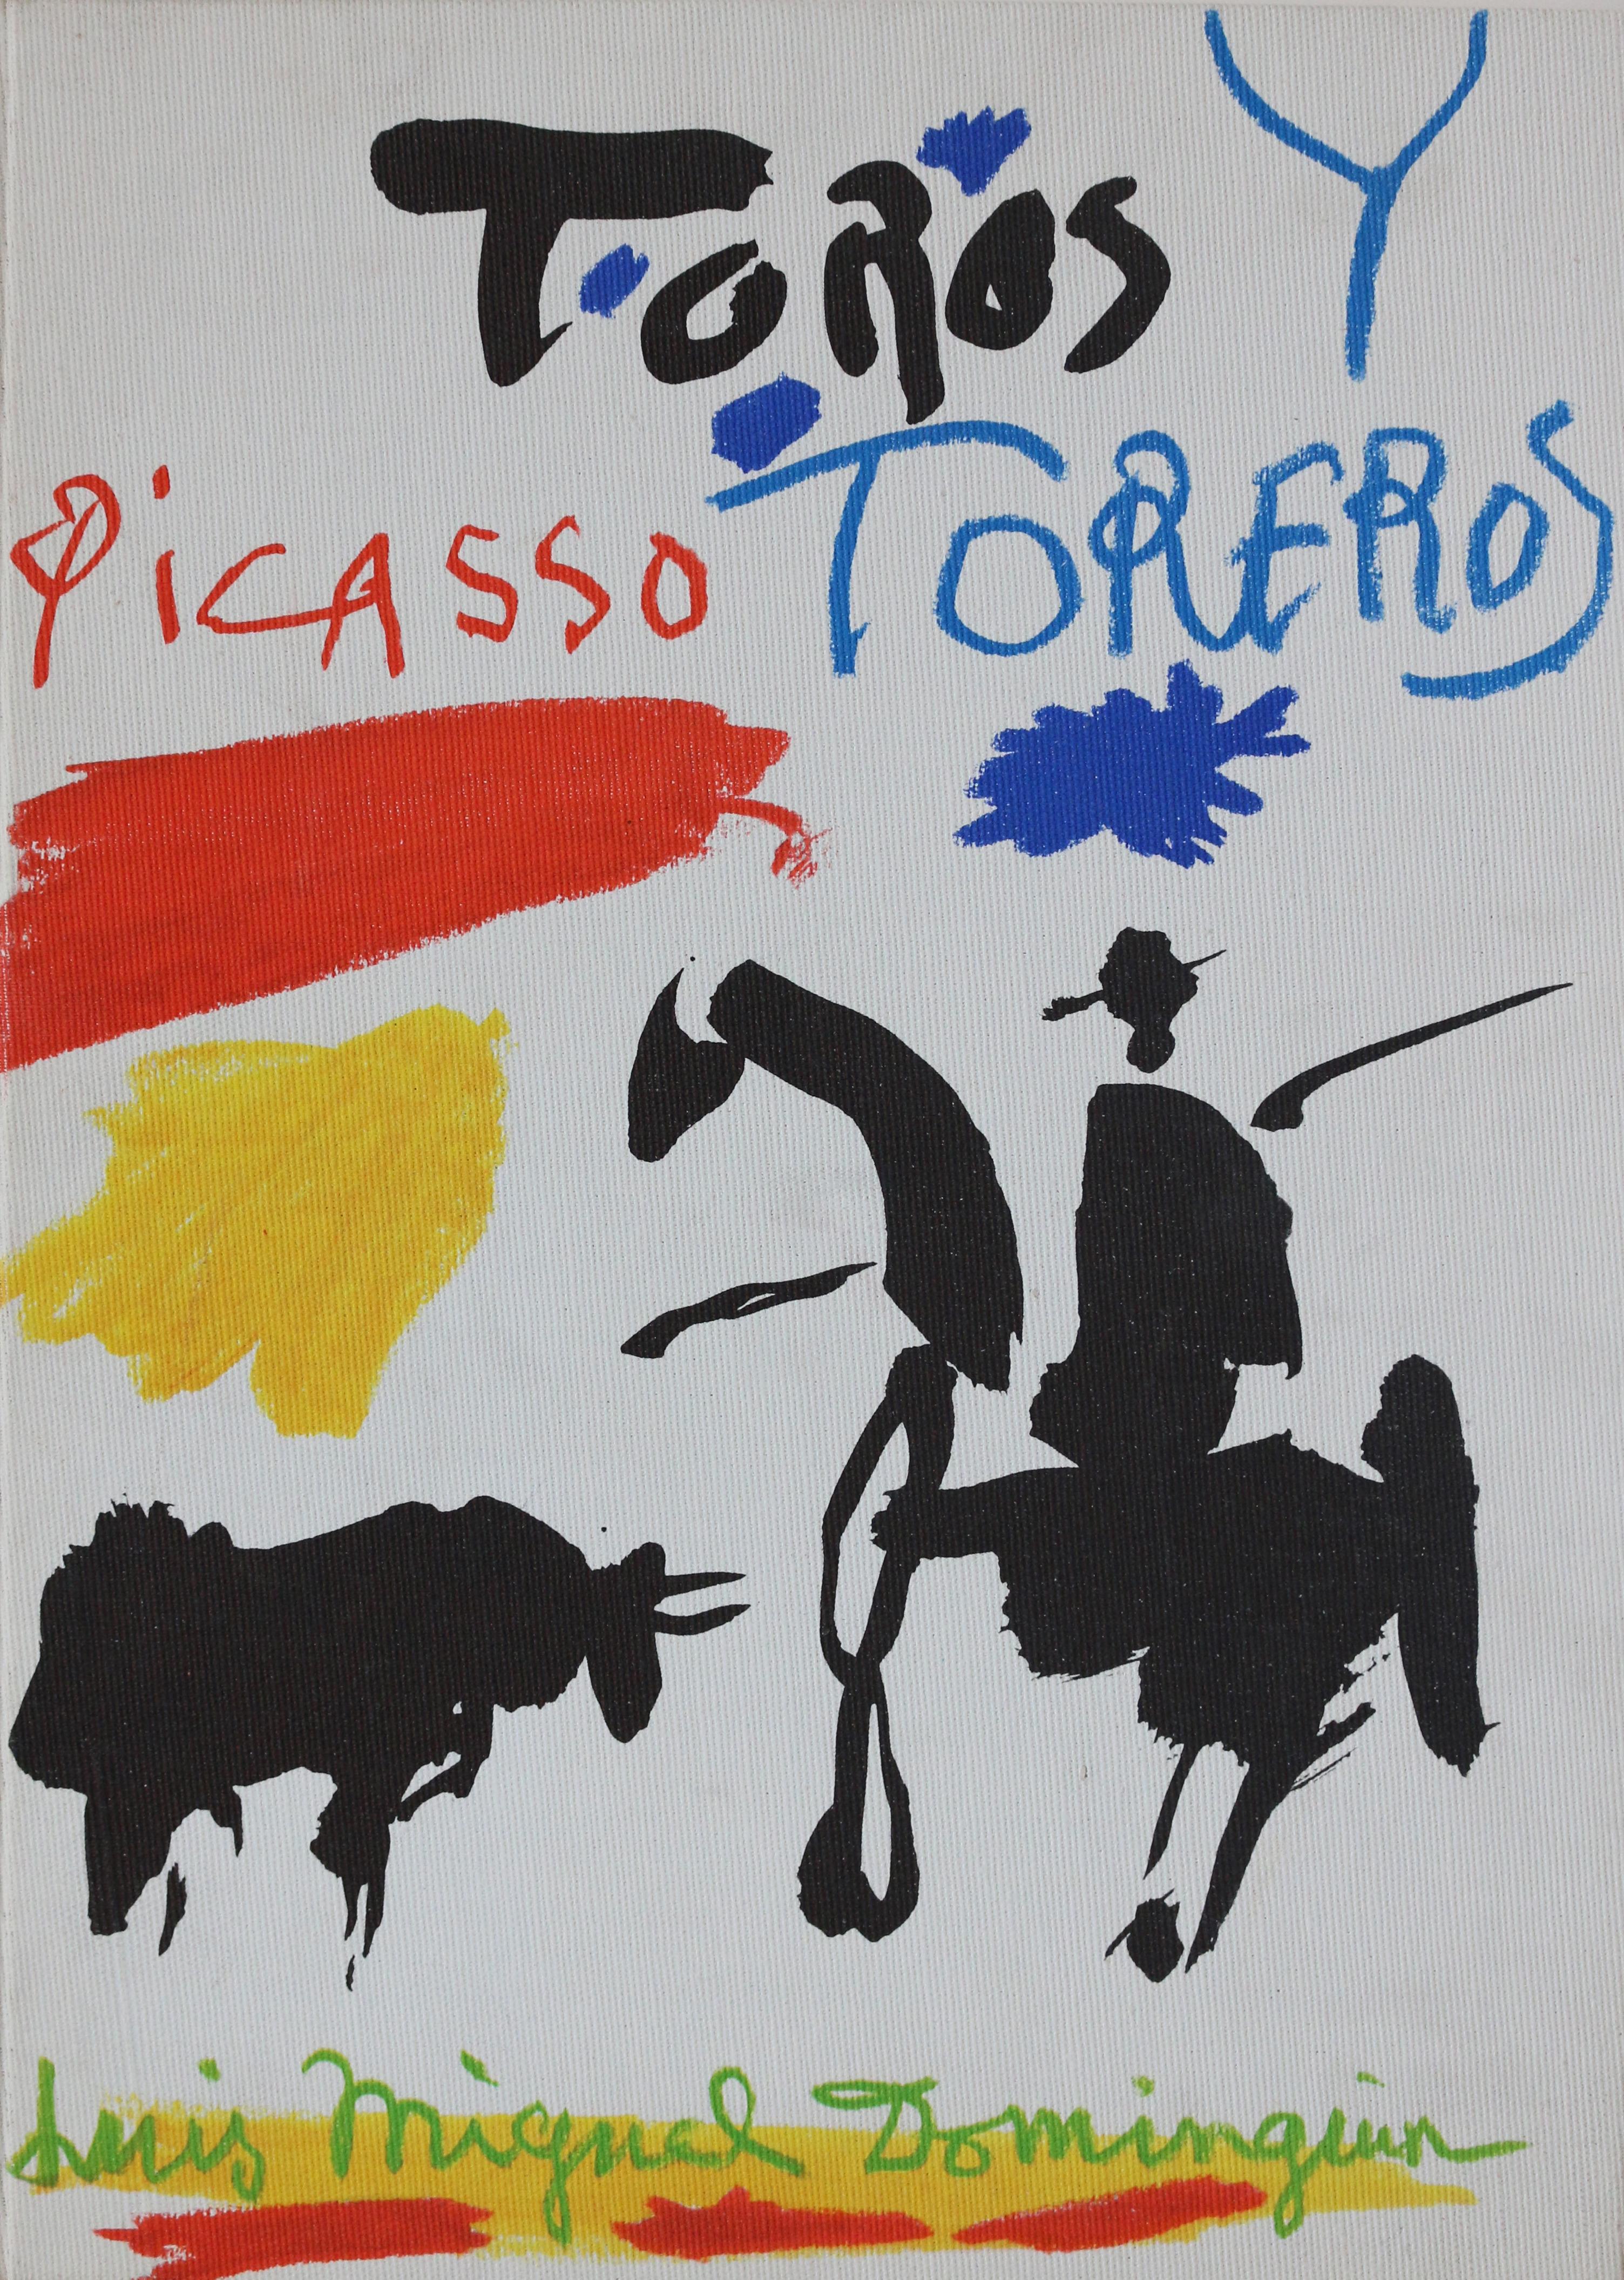 Toros y Toreros (first edition)